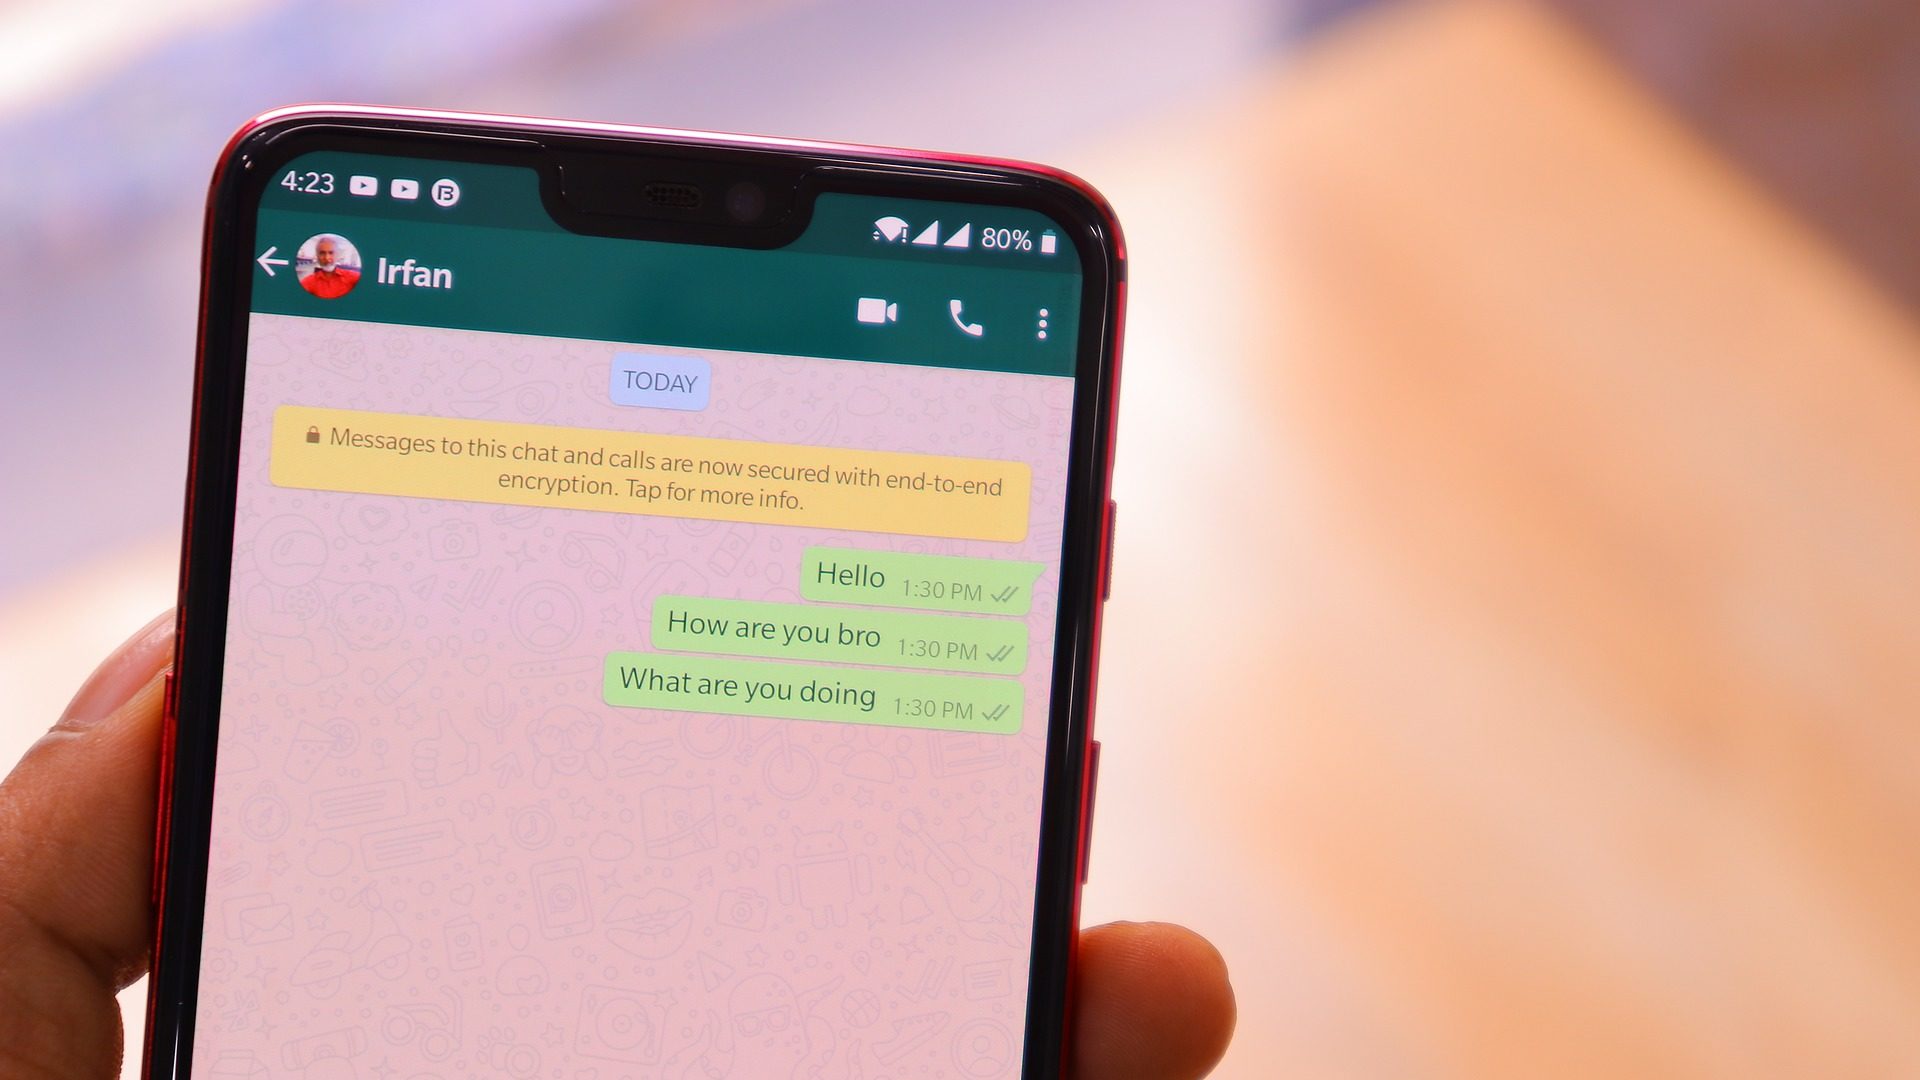 Mensagem de Dia dos Namorados 2023: 6 apps para enviar no WhatsApp